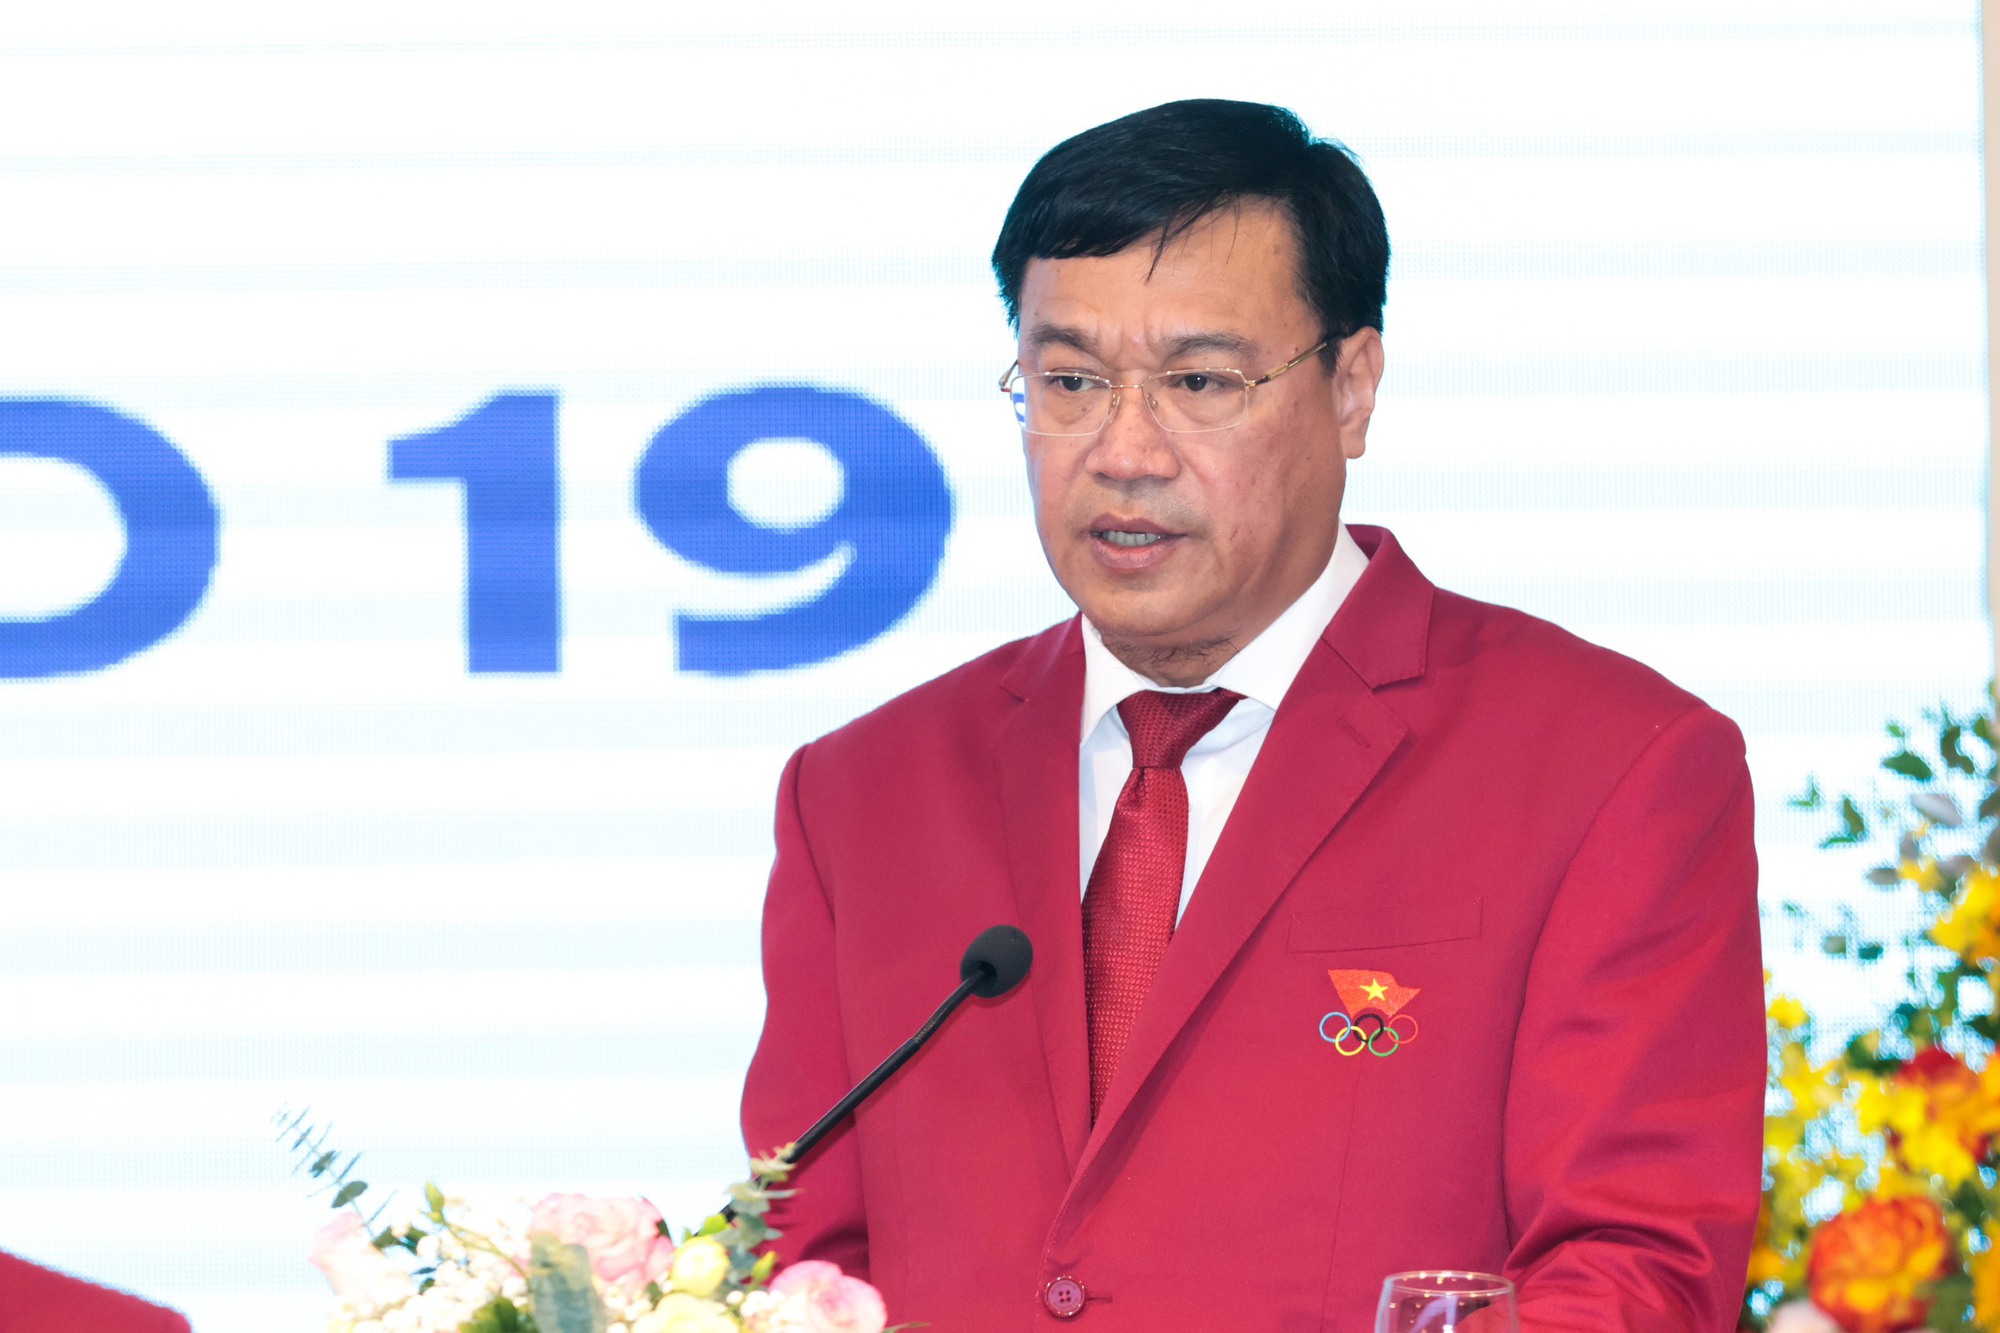 Cục trưởng Cục TDTT Đặng Hà Việt: Mục tiêu giành 2-5 HCV của Đoàn Thể thao Việt Nam là hợp lý - Ảnh 1.